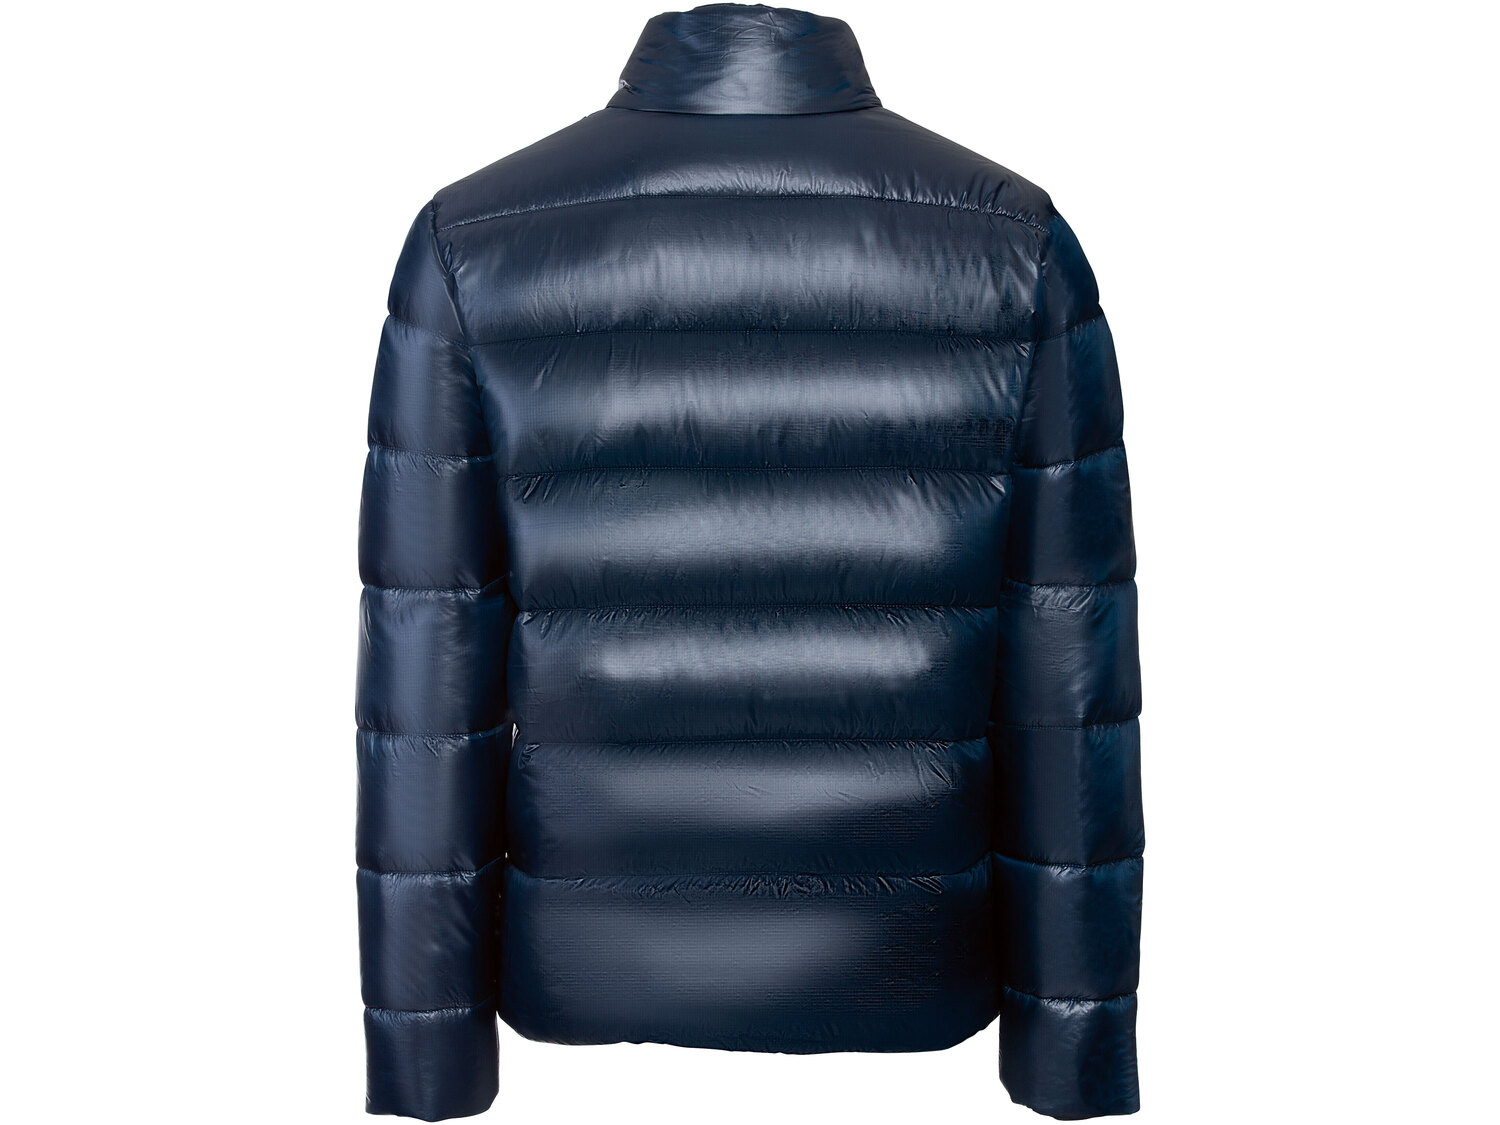 Pikowana kurtka męska , cena 79,90 PLN 
- rozmiary: M-XL
- wiatroszczelna
- ...